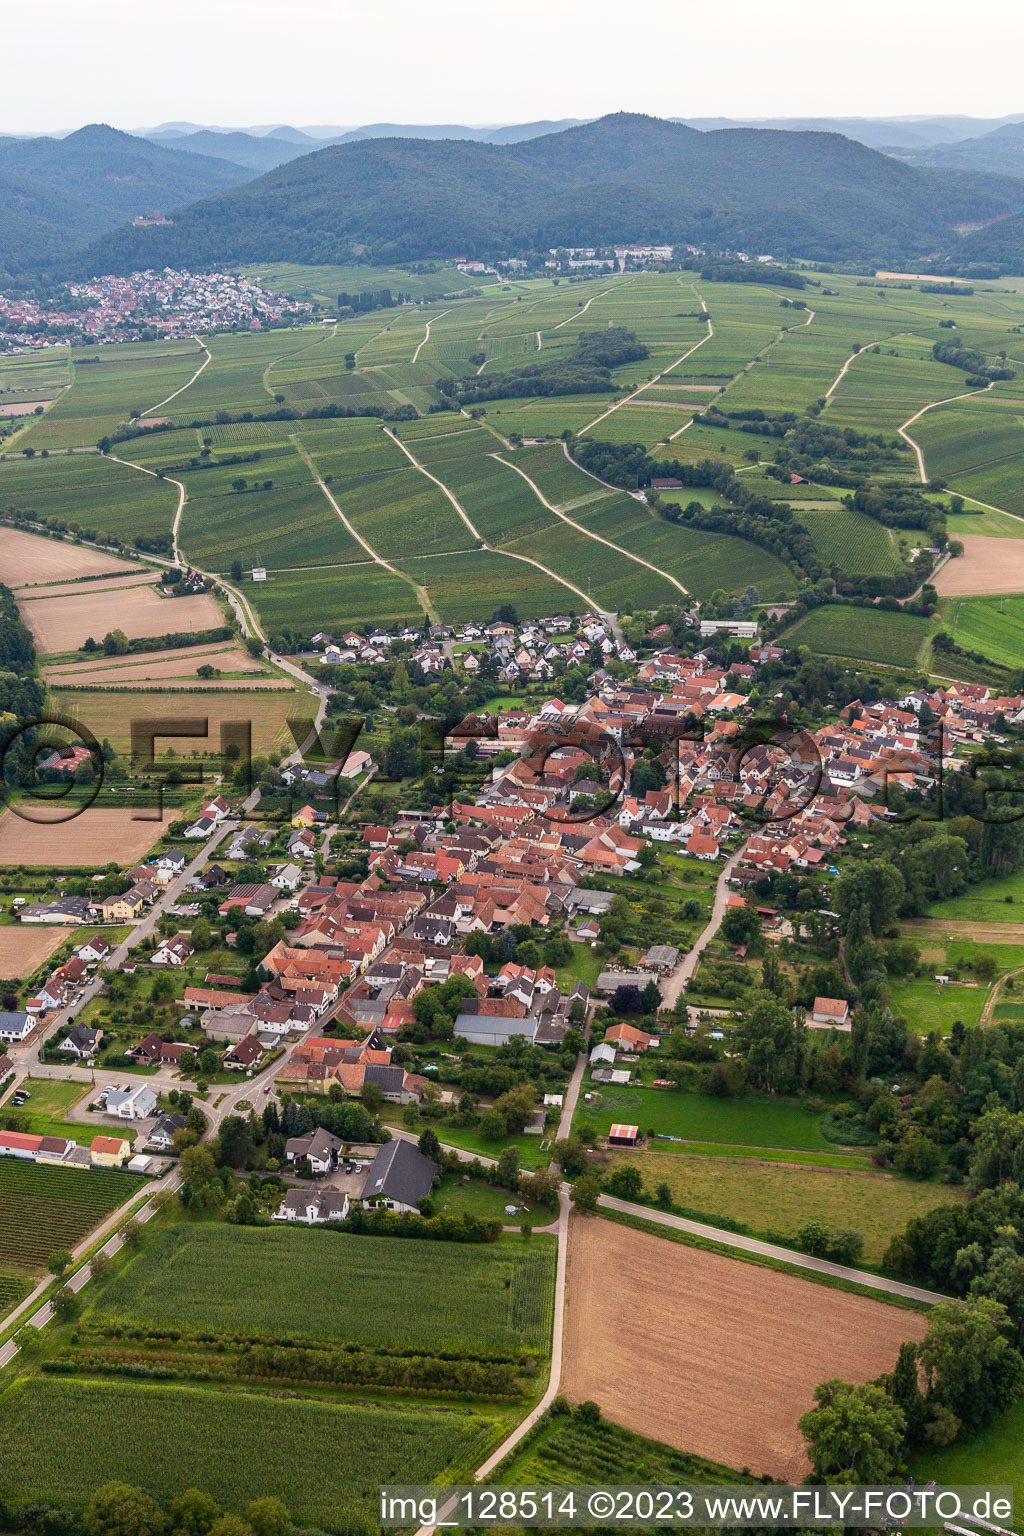 District Heuchelheim in Heuchelheim-Klingen in the state Rhineland-Palatinate, Germany from a drone